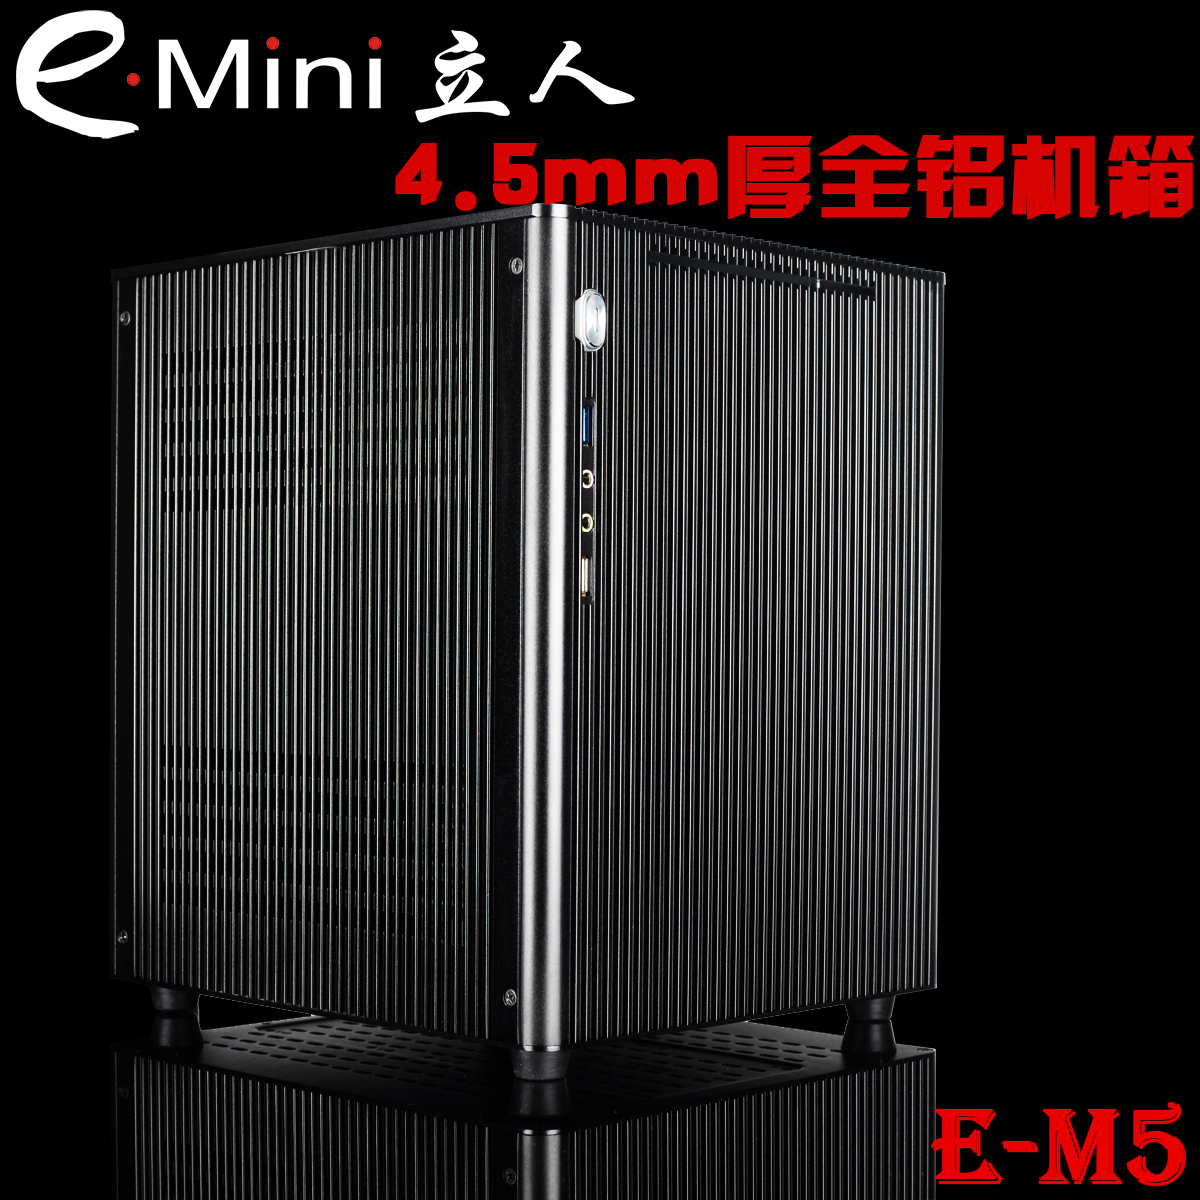 特价包邮 立人/E.mini 新版E-M5 全铝HTPC机箱 USB3.0 MATX机箱